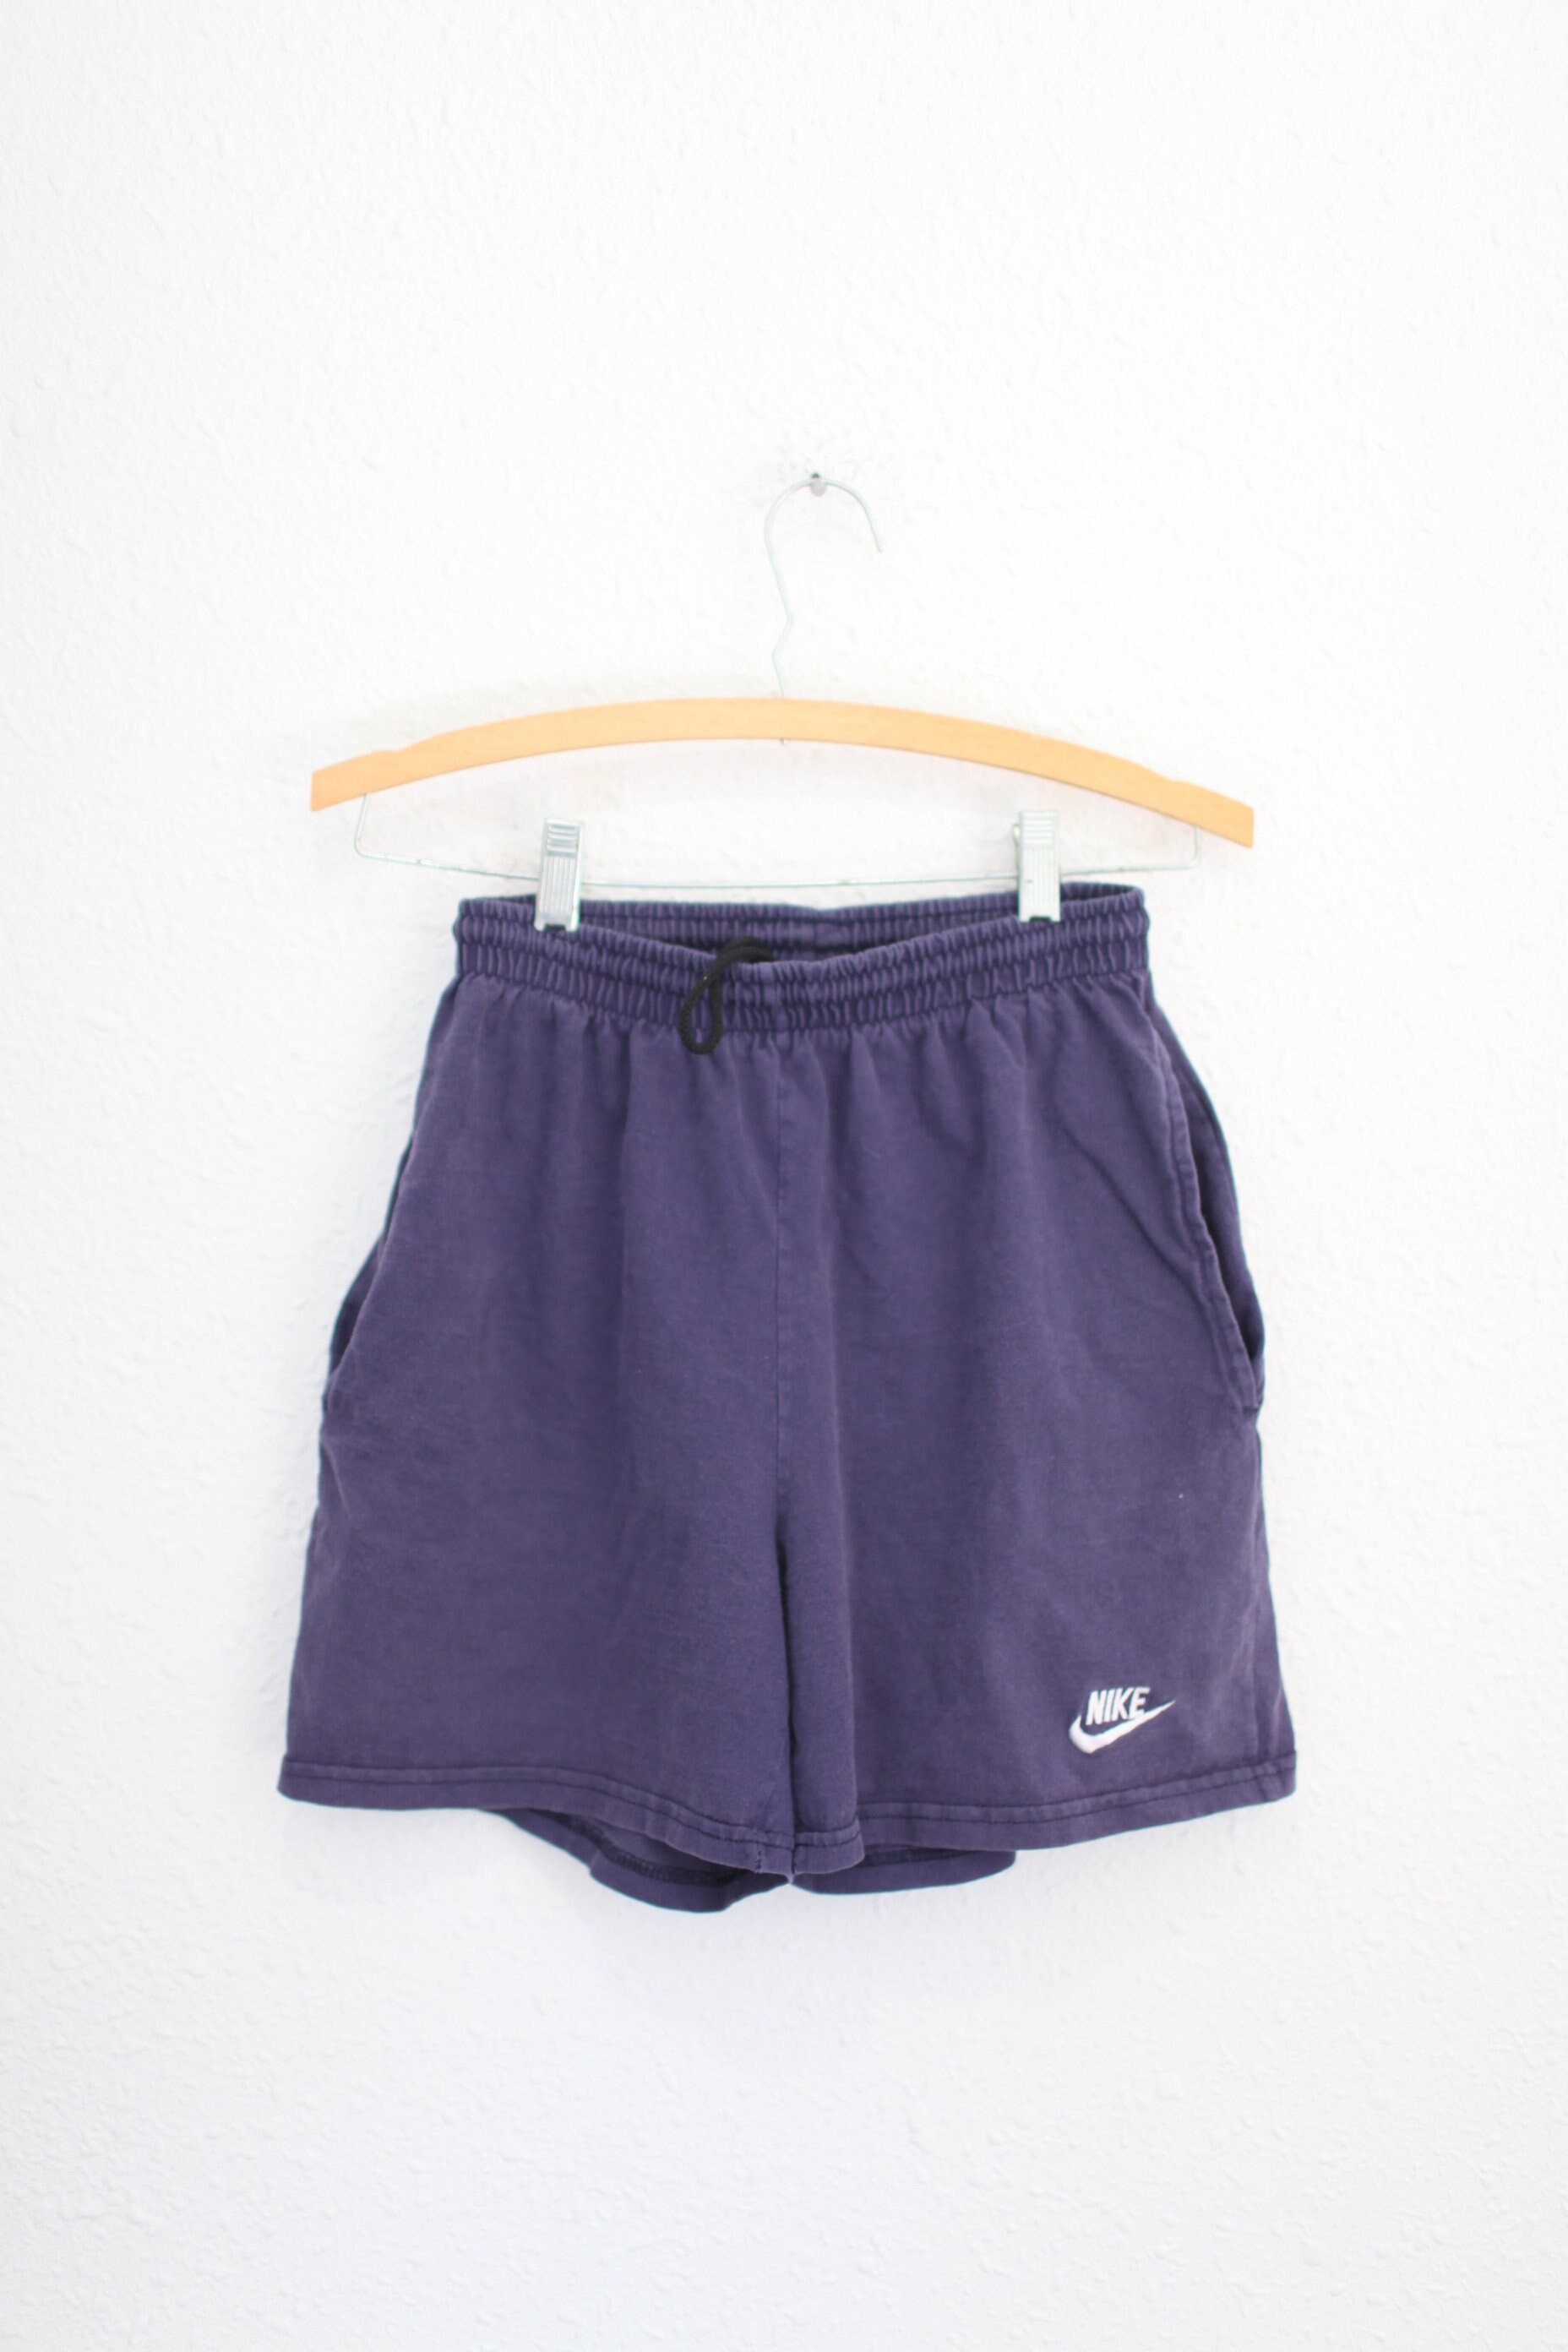 Nike Sweat Shorts 